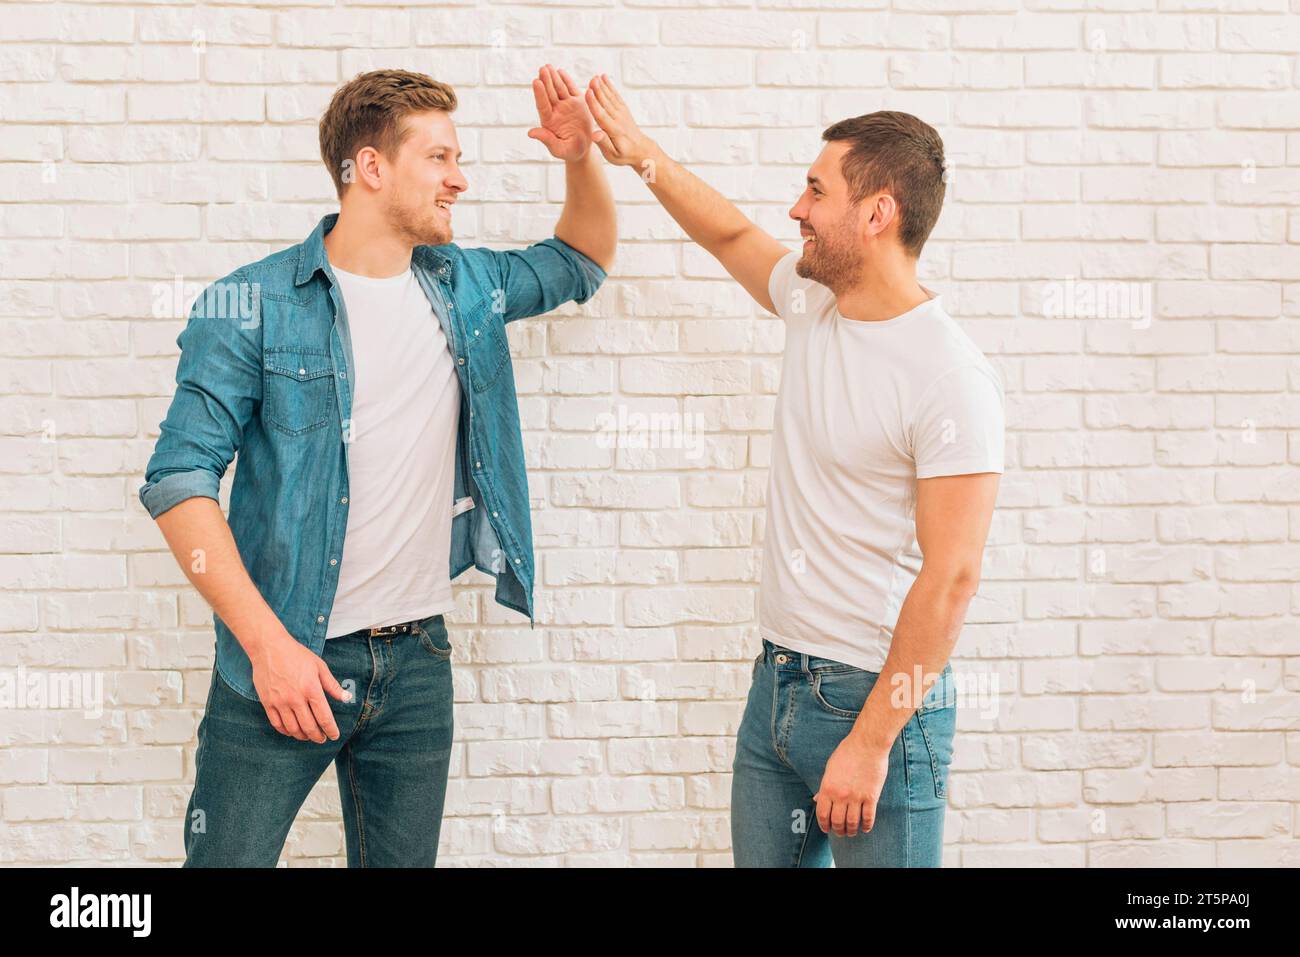 Zwei männliche Freunde, die sich gegen eine weiße Ziegelmauer hochschlagen Stockfoto